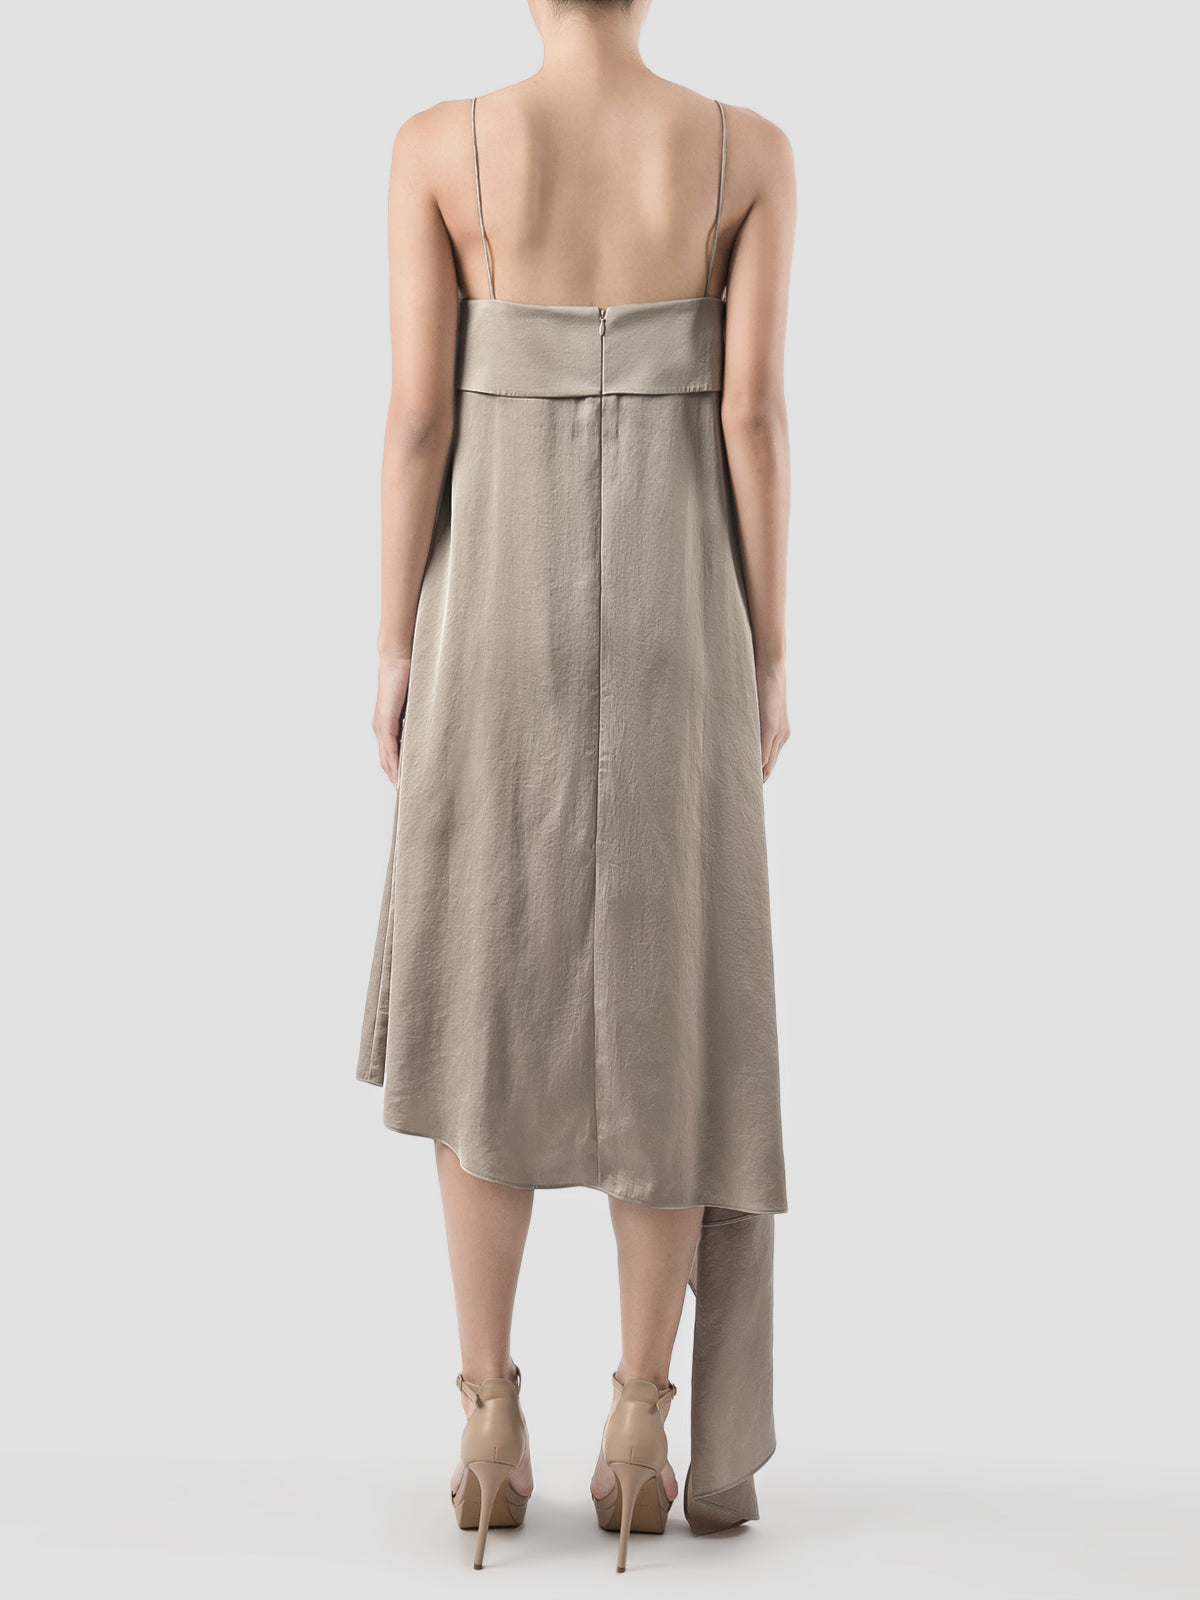 Lany Beige Asymmetrical Pleated Dress